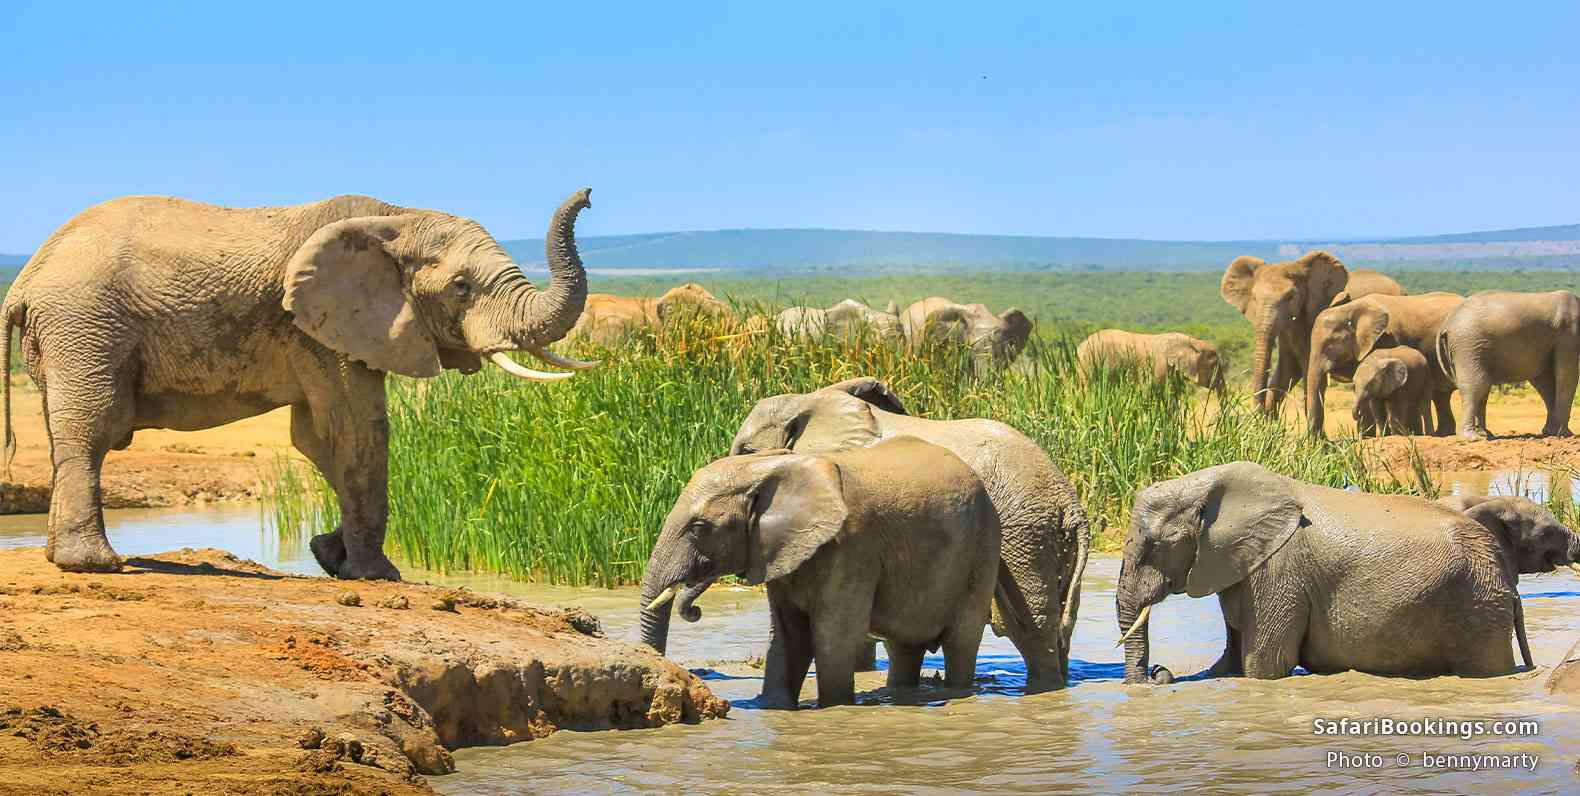 Elephants bathing and drinking